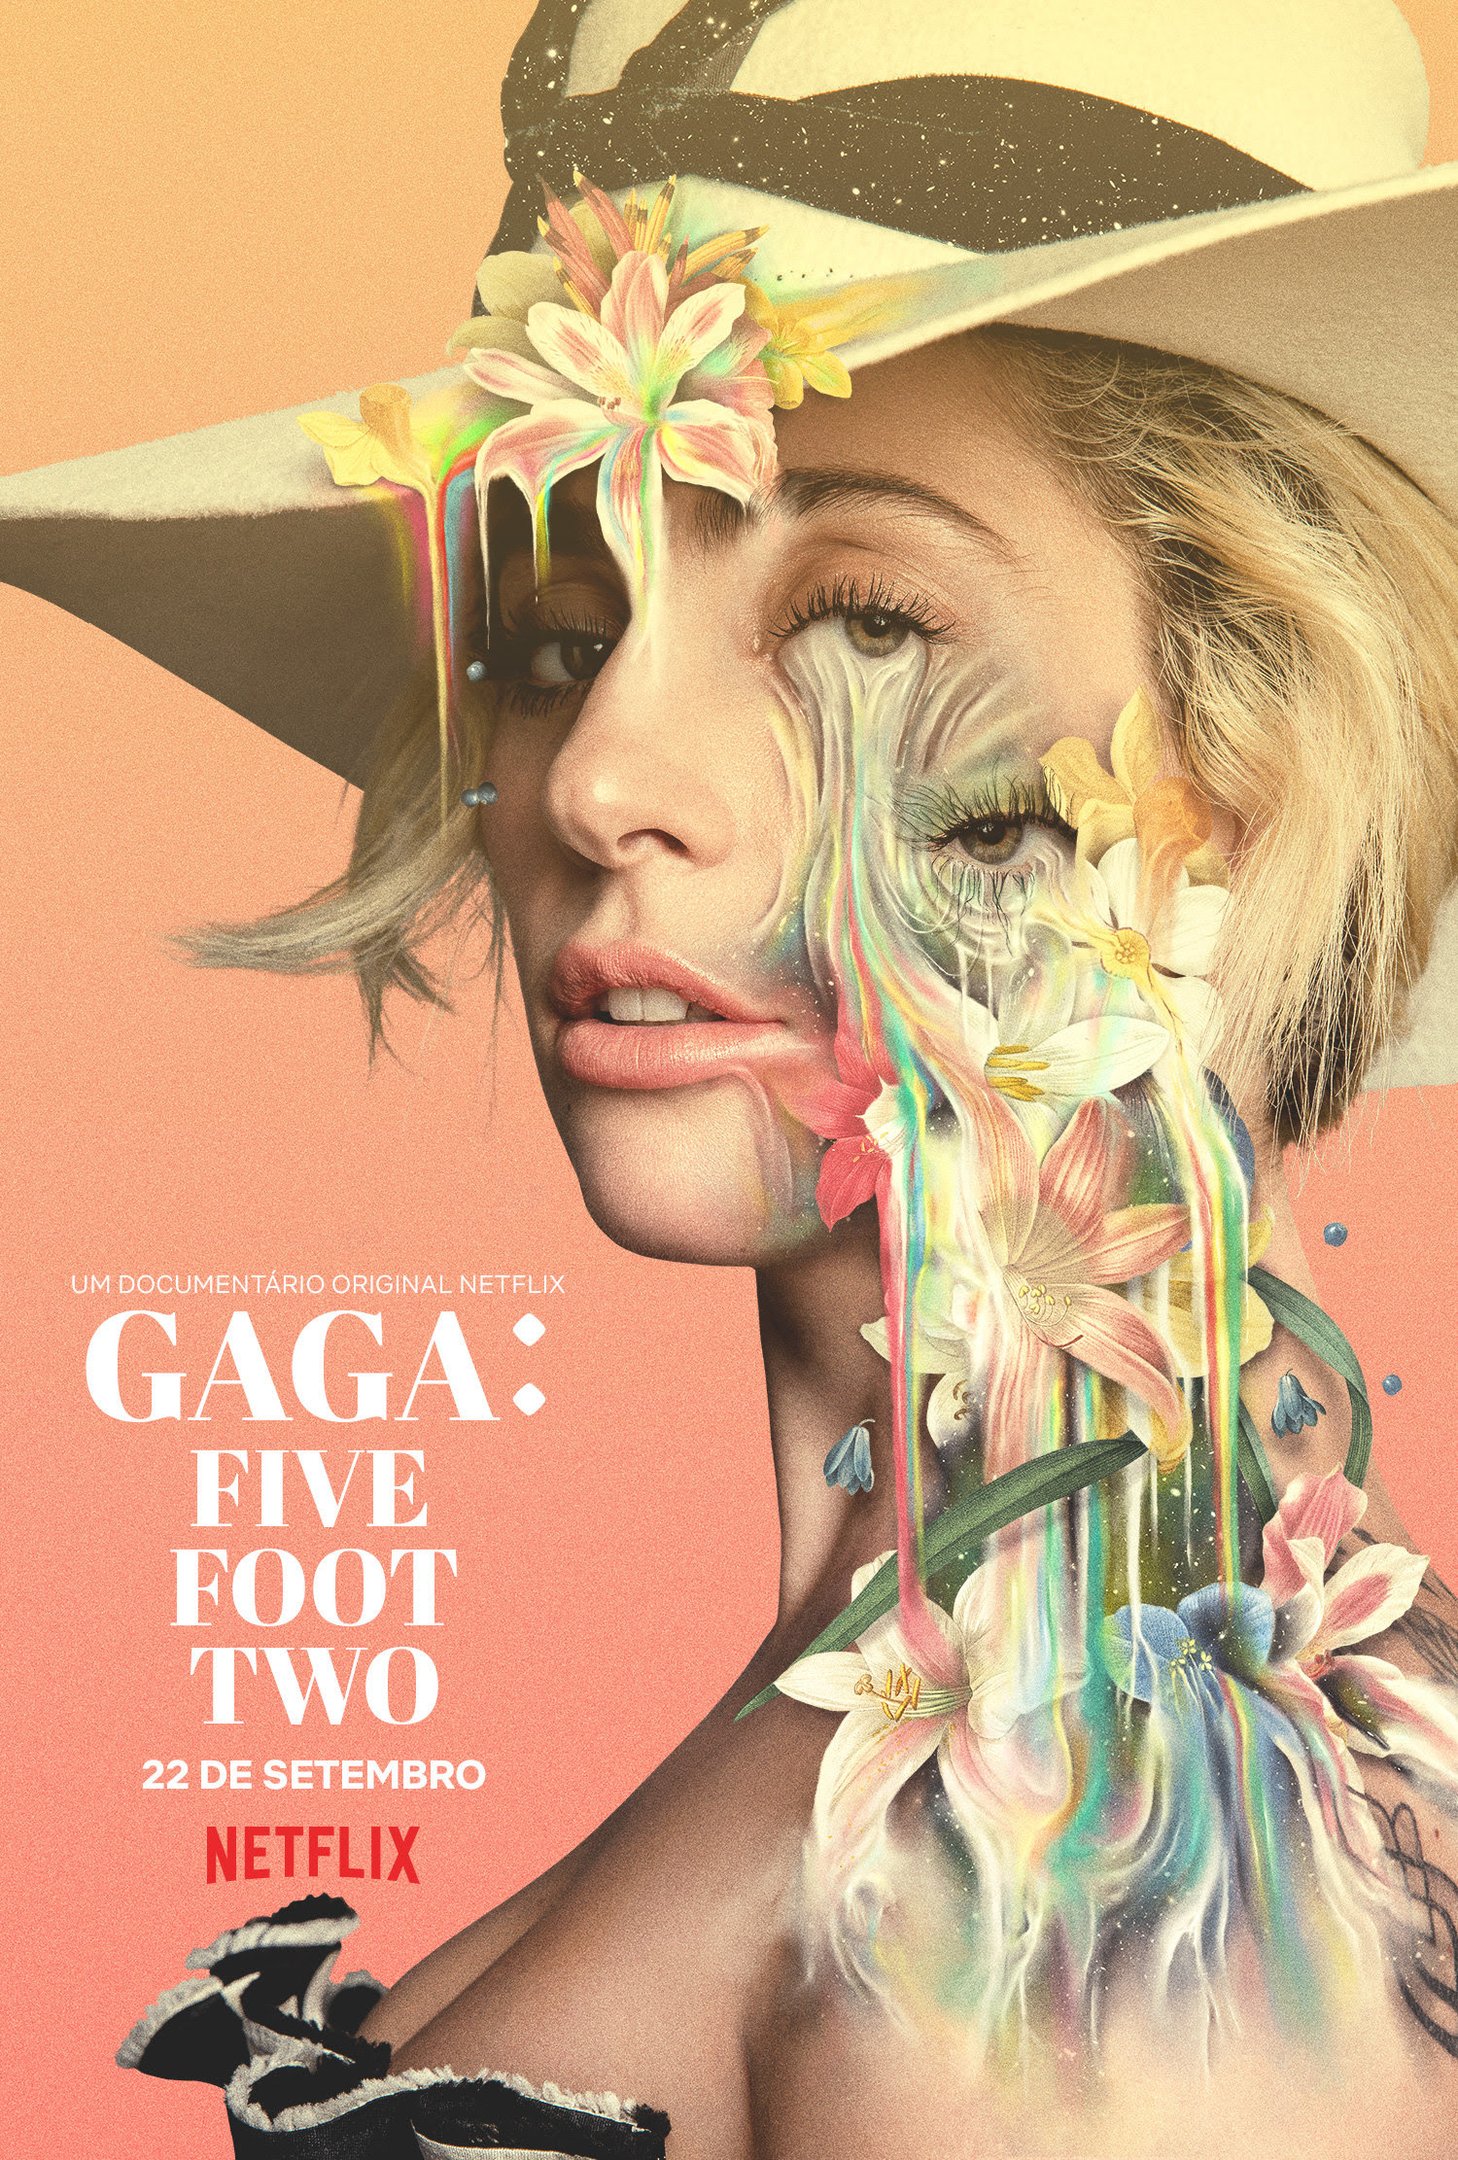 Gaga Five Foot Two Documentário Da Netflix Sobre Lady Gaga Ganha Trailer E Pôster Minha Série